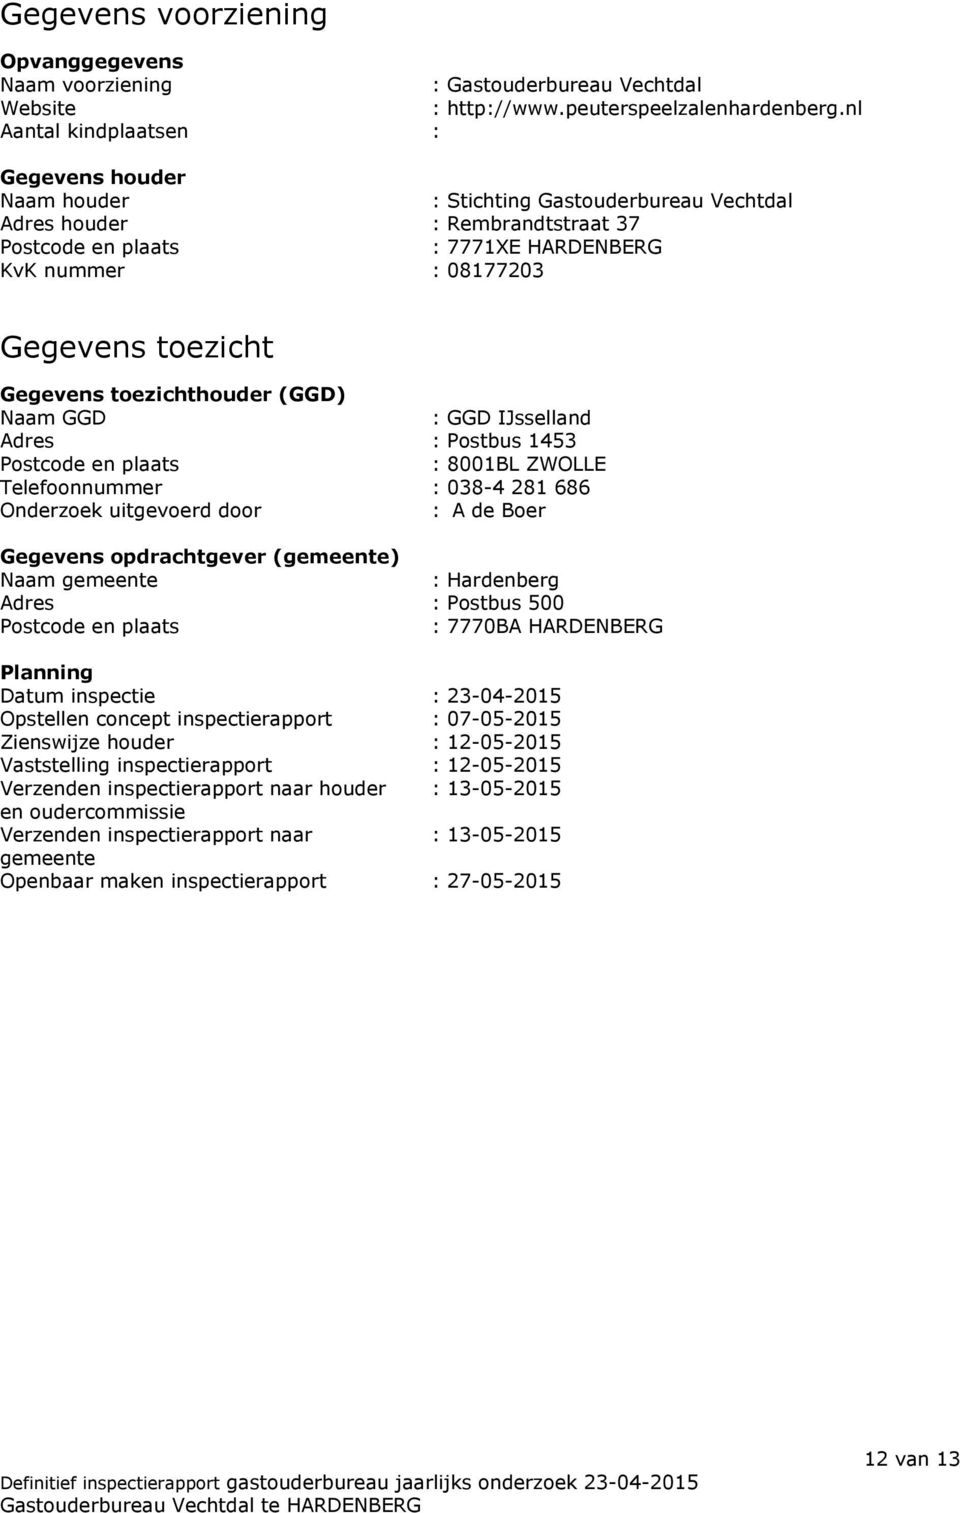 toezicht Gegevens toezichthouder (GGD) Naam GGD : GGD IJsselland Adres : Postbus 1453 Postcode en plaats : 8001BL ZWOLLE Telefoonnummer : 038-4 281 686 Onderzoek uitgevoerd door : A de Boer Gegevens